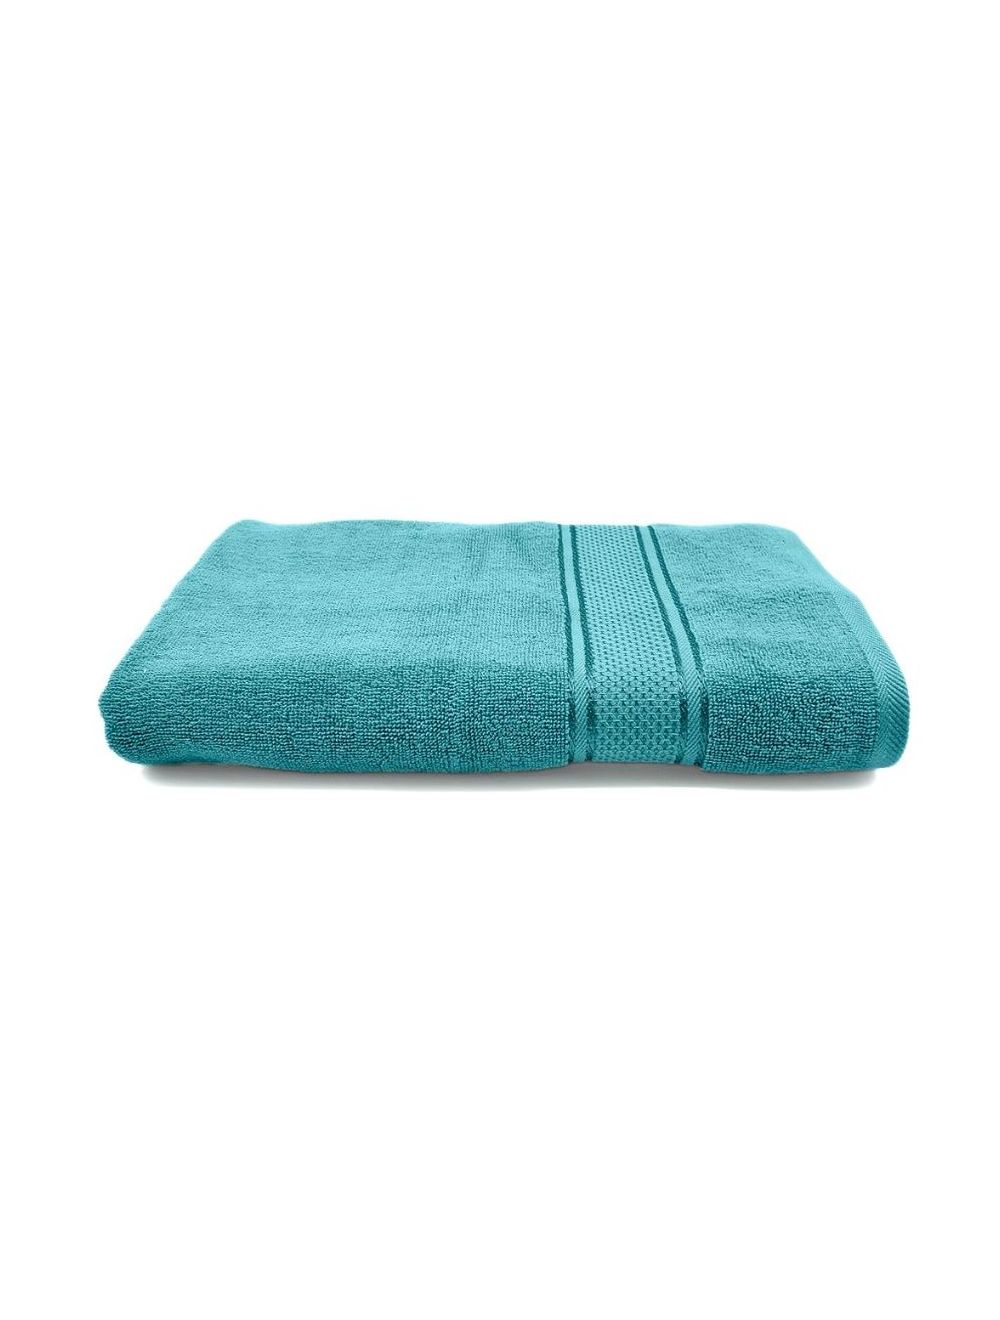 Rishahome 100% Cotton Bath Towel, Premium Collection, Sky Blue Colour -14RHFT051